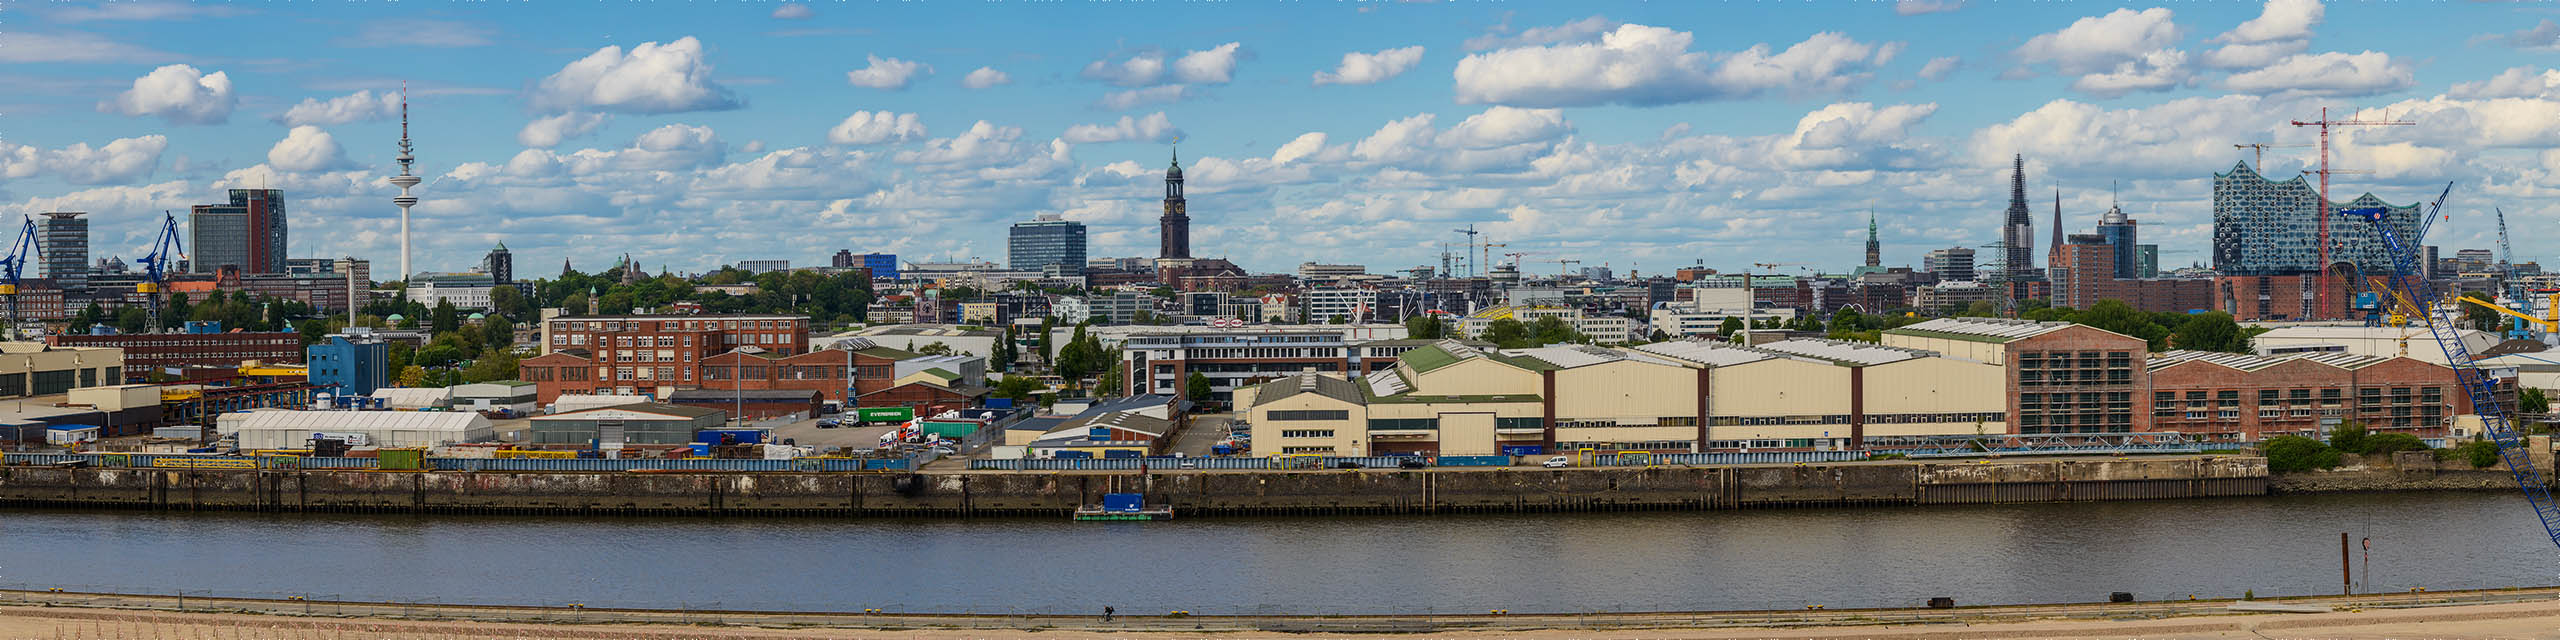 Skyline-Panorama von Hamburg, aufgenommen vom Steinwerder Hafen